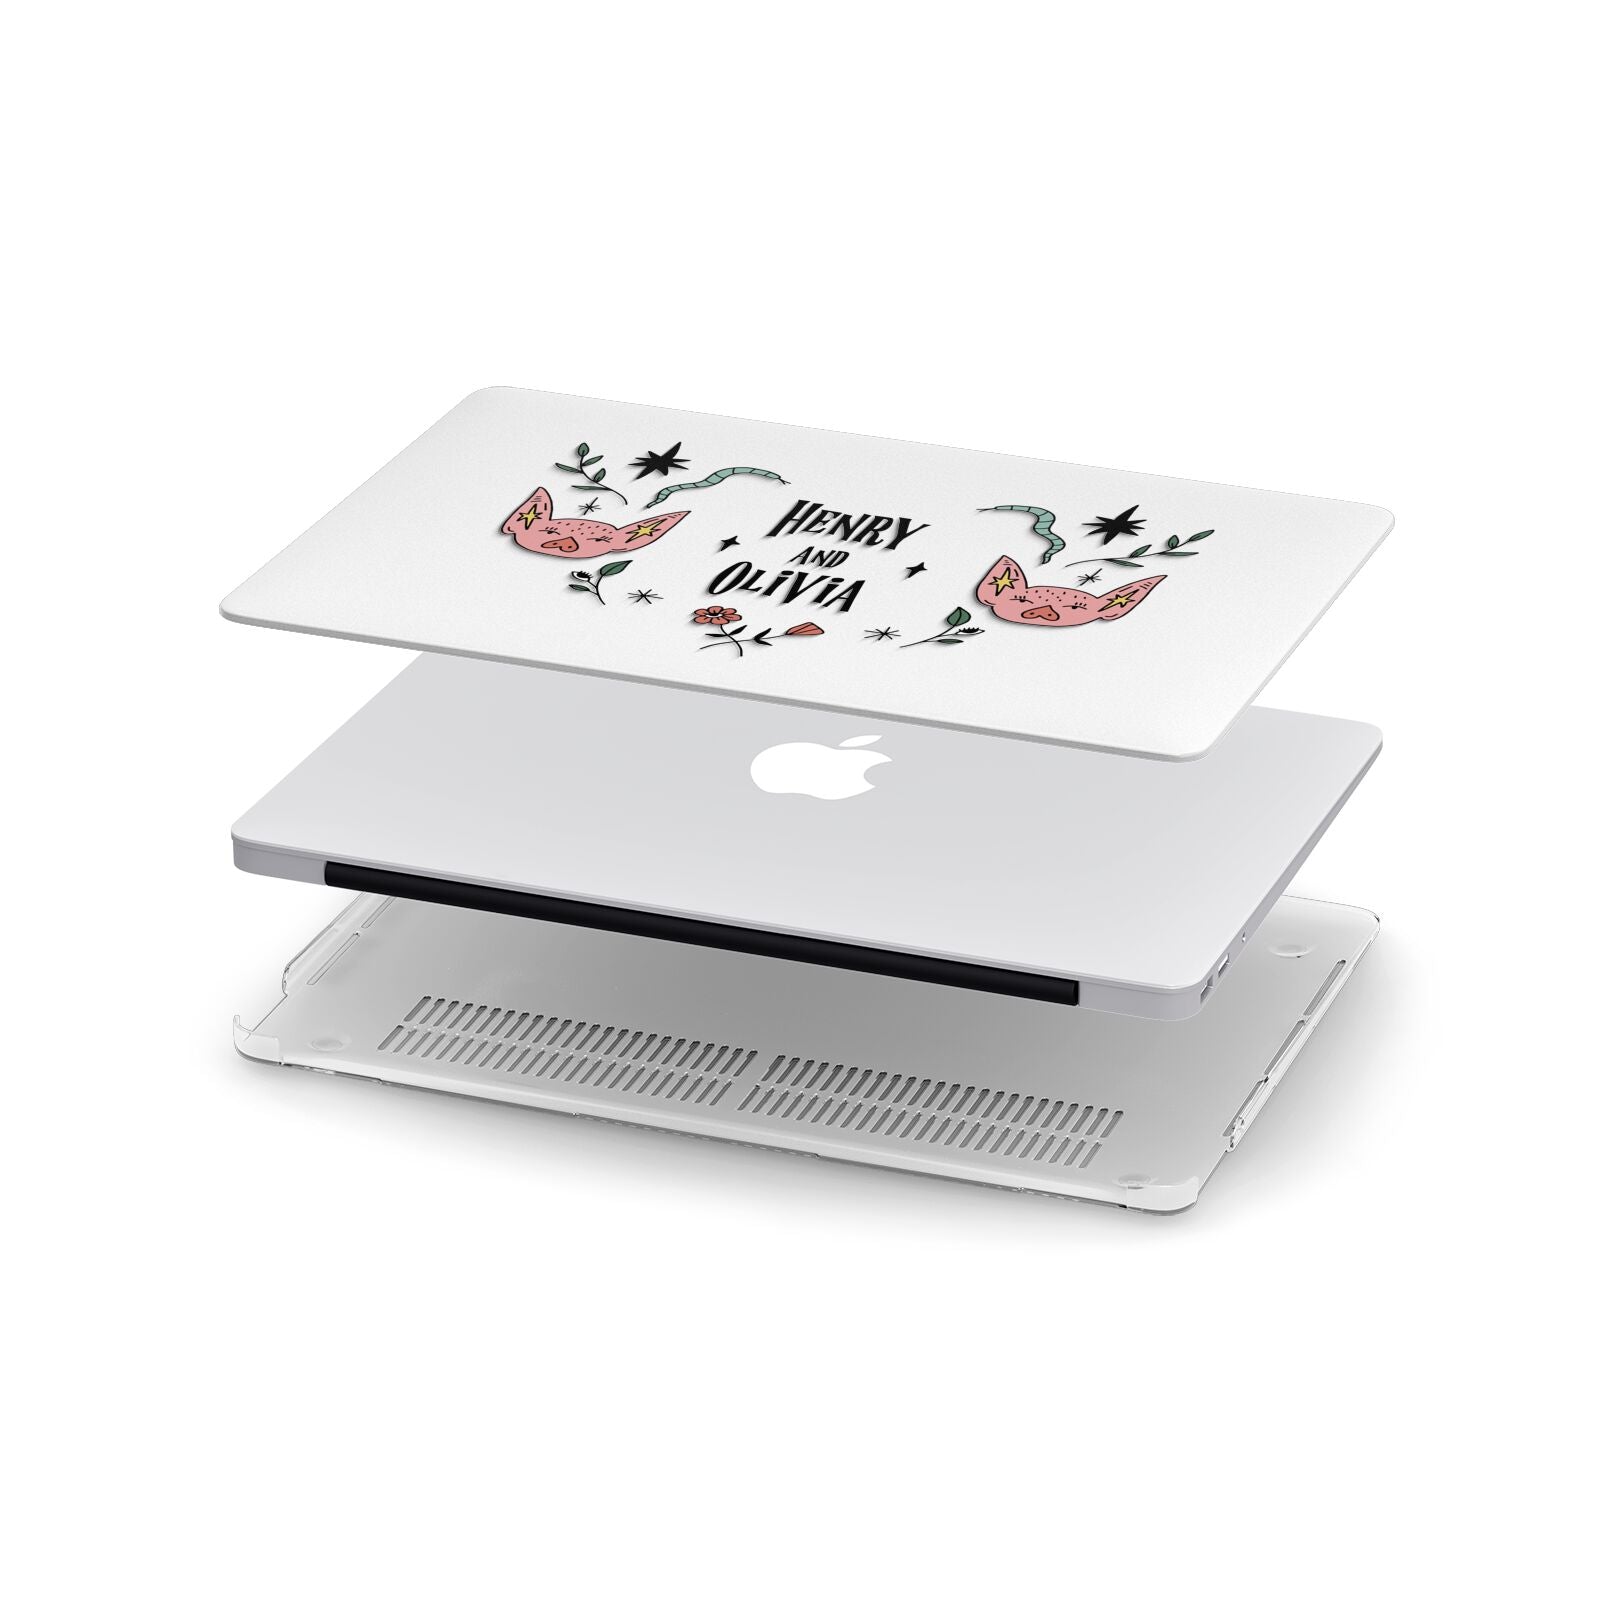 Personalised Piggies Apple MacBook Case in Detail